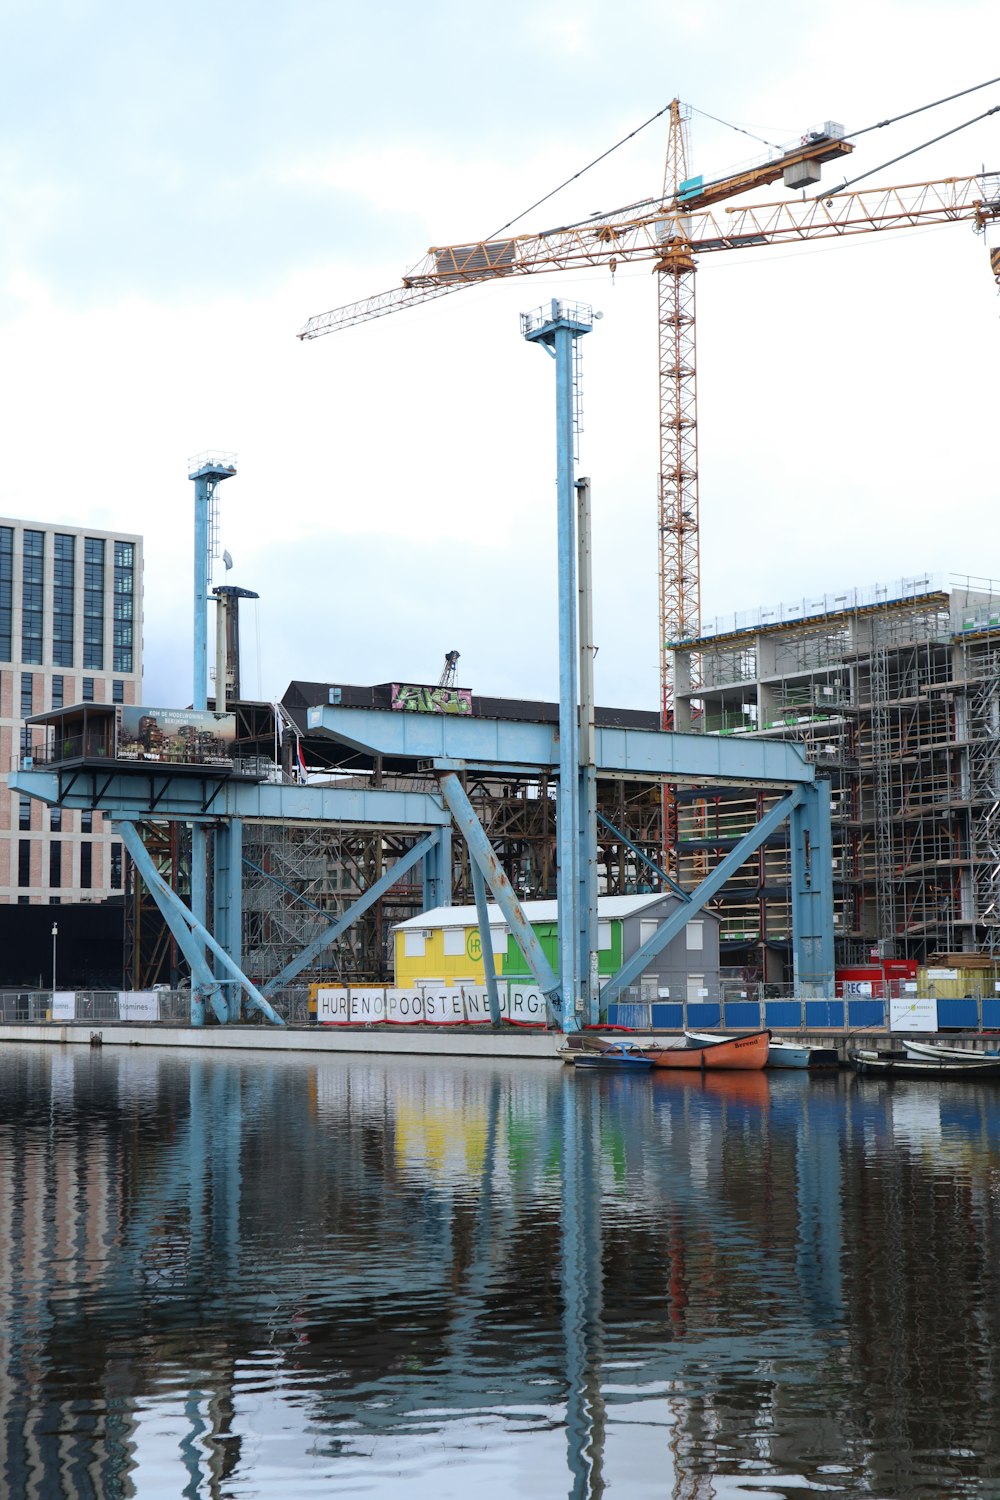 gray metal crane near body of water during daytime